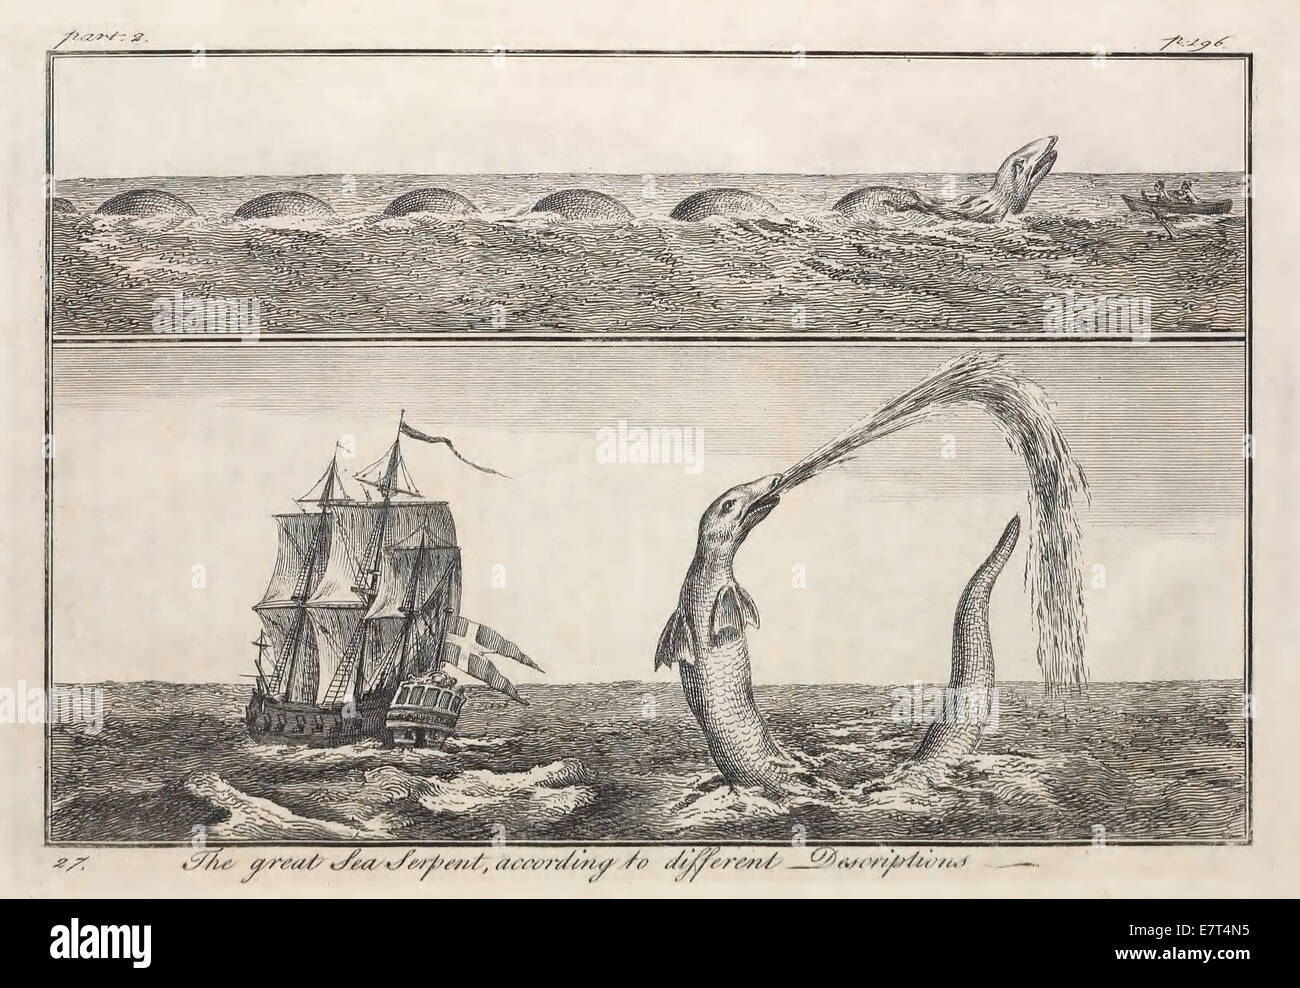 Erich Pontopoidans (1698-1764) Zeichnung von die große Seeschlange. Siehe Beschreibung für mehr Informationen. Stockfoto